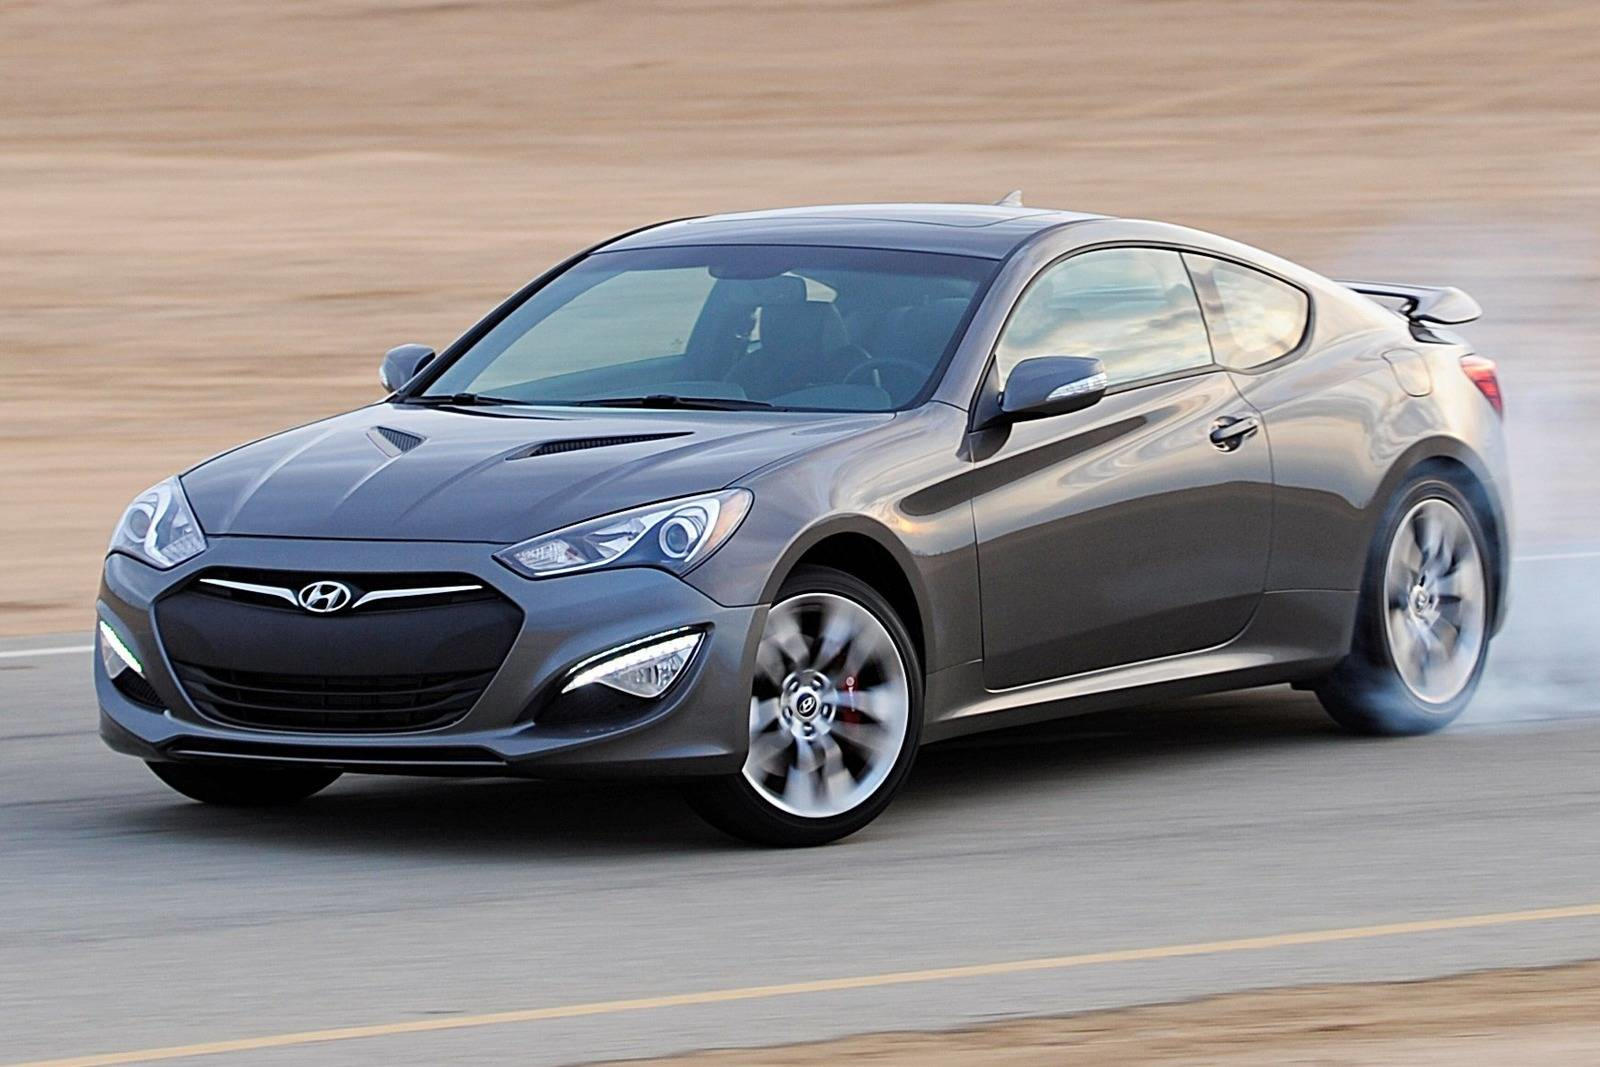 2014 Hyundai Genesis Coupe Review, Trims, Specs, Price